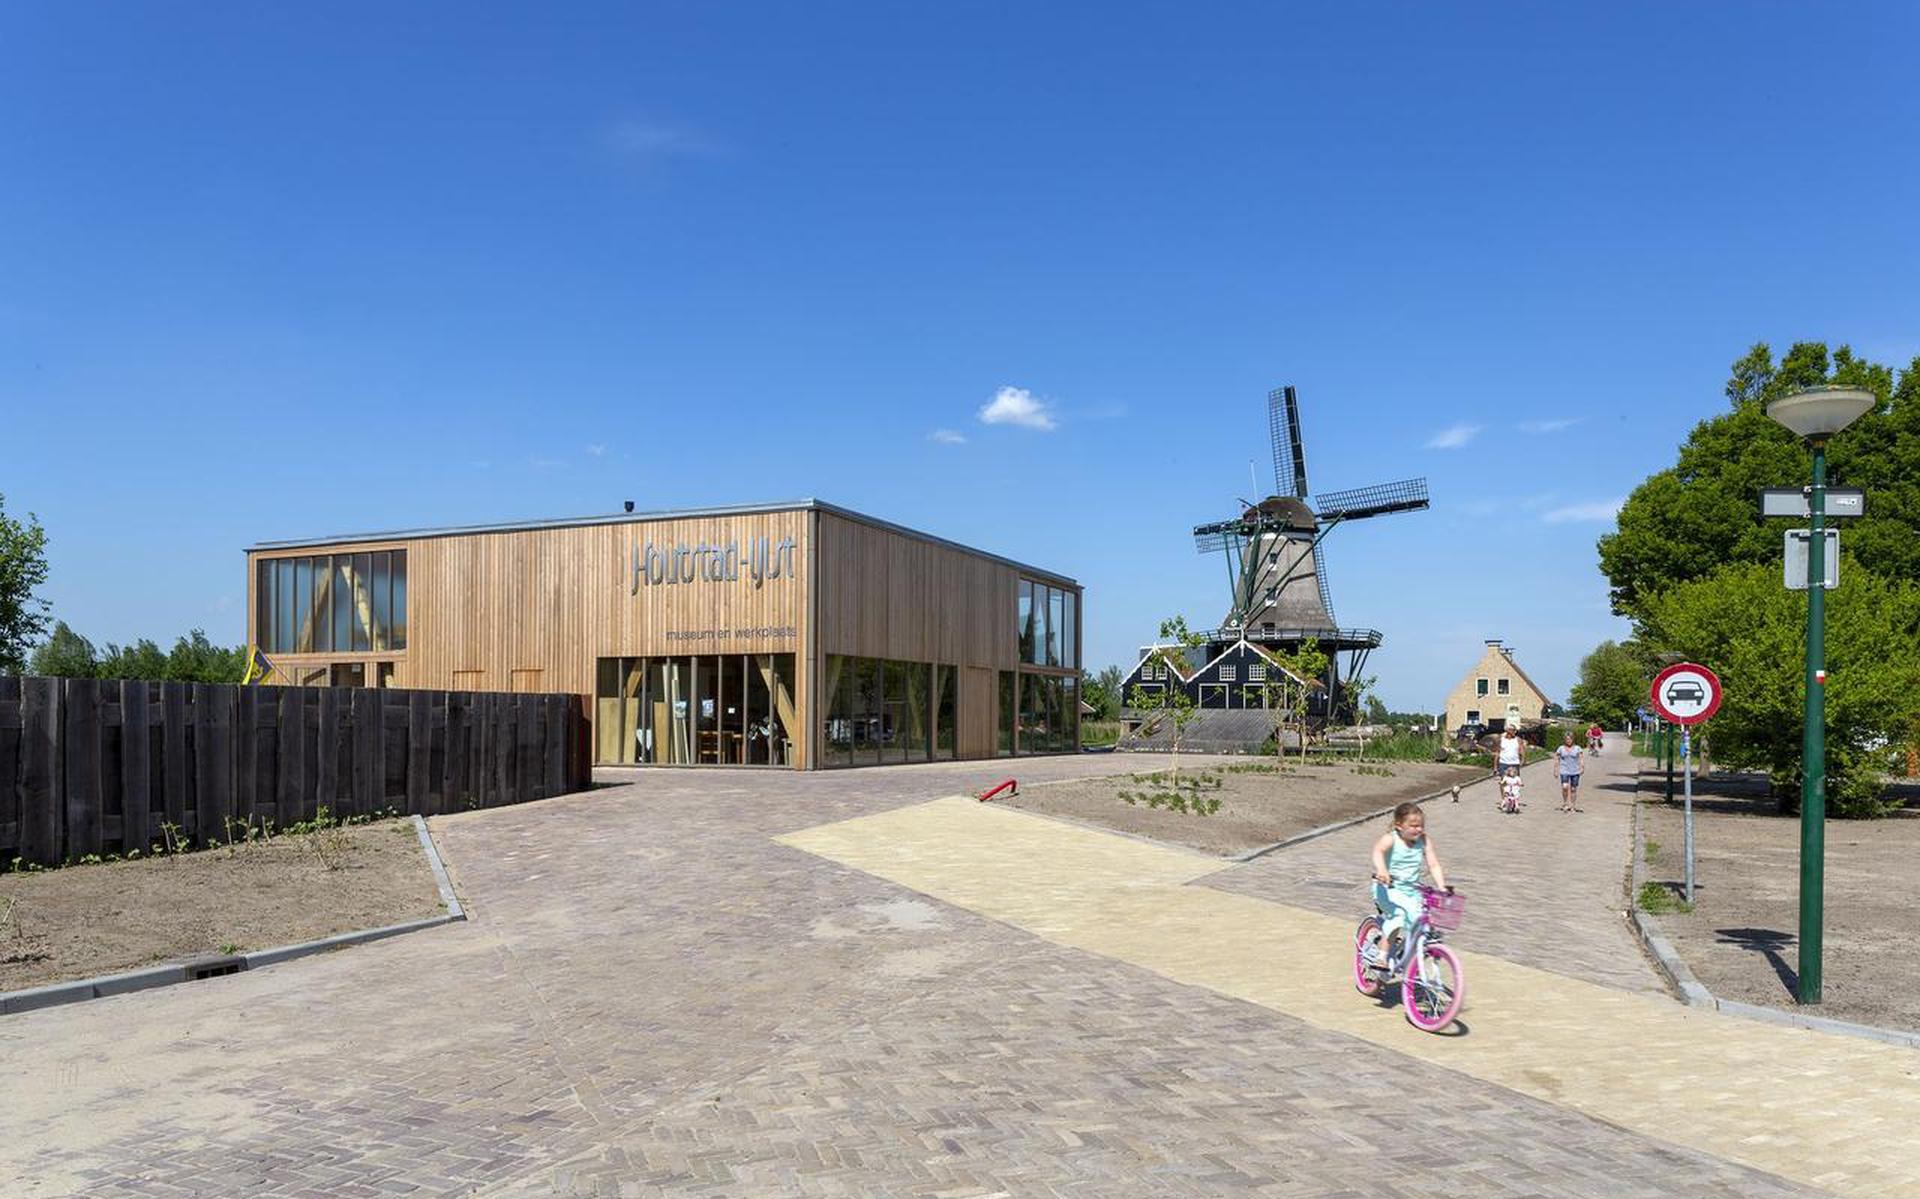 Museum en werkplaats Houtstad, IJlst is de winnaar van de Vredeman de Vriesprijs 2018. Architect Haiko Meijer (van Onix NL, Groningen), opdrachtgever Stichting Museum en Werkplaats Houtstad IJlst.

